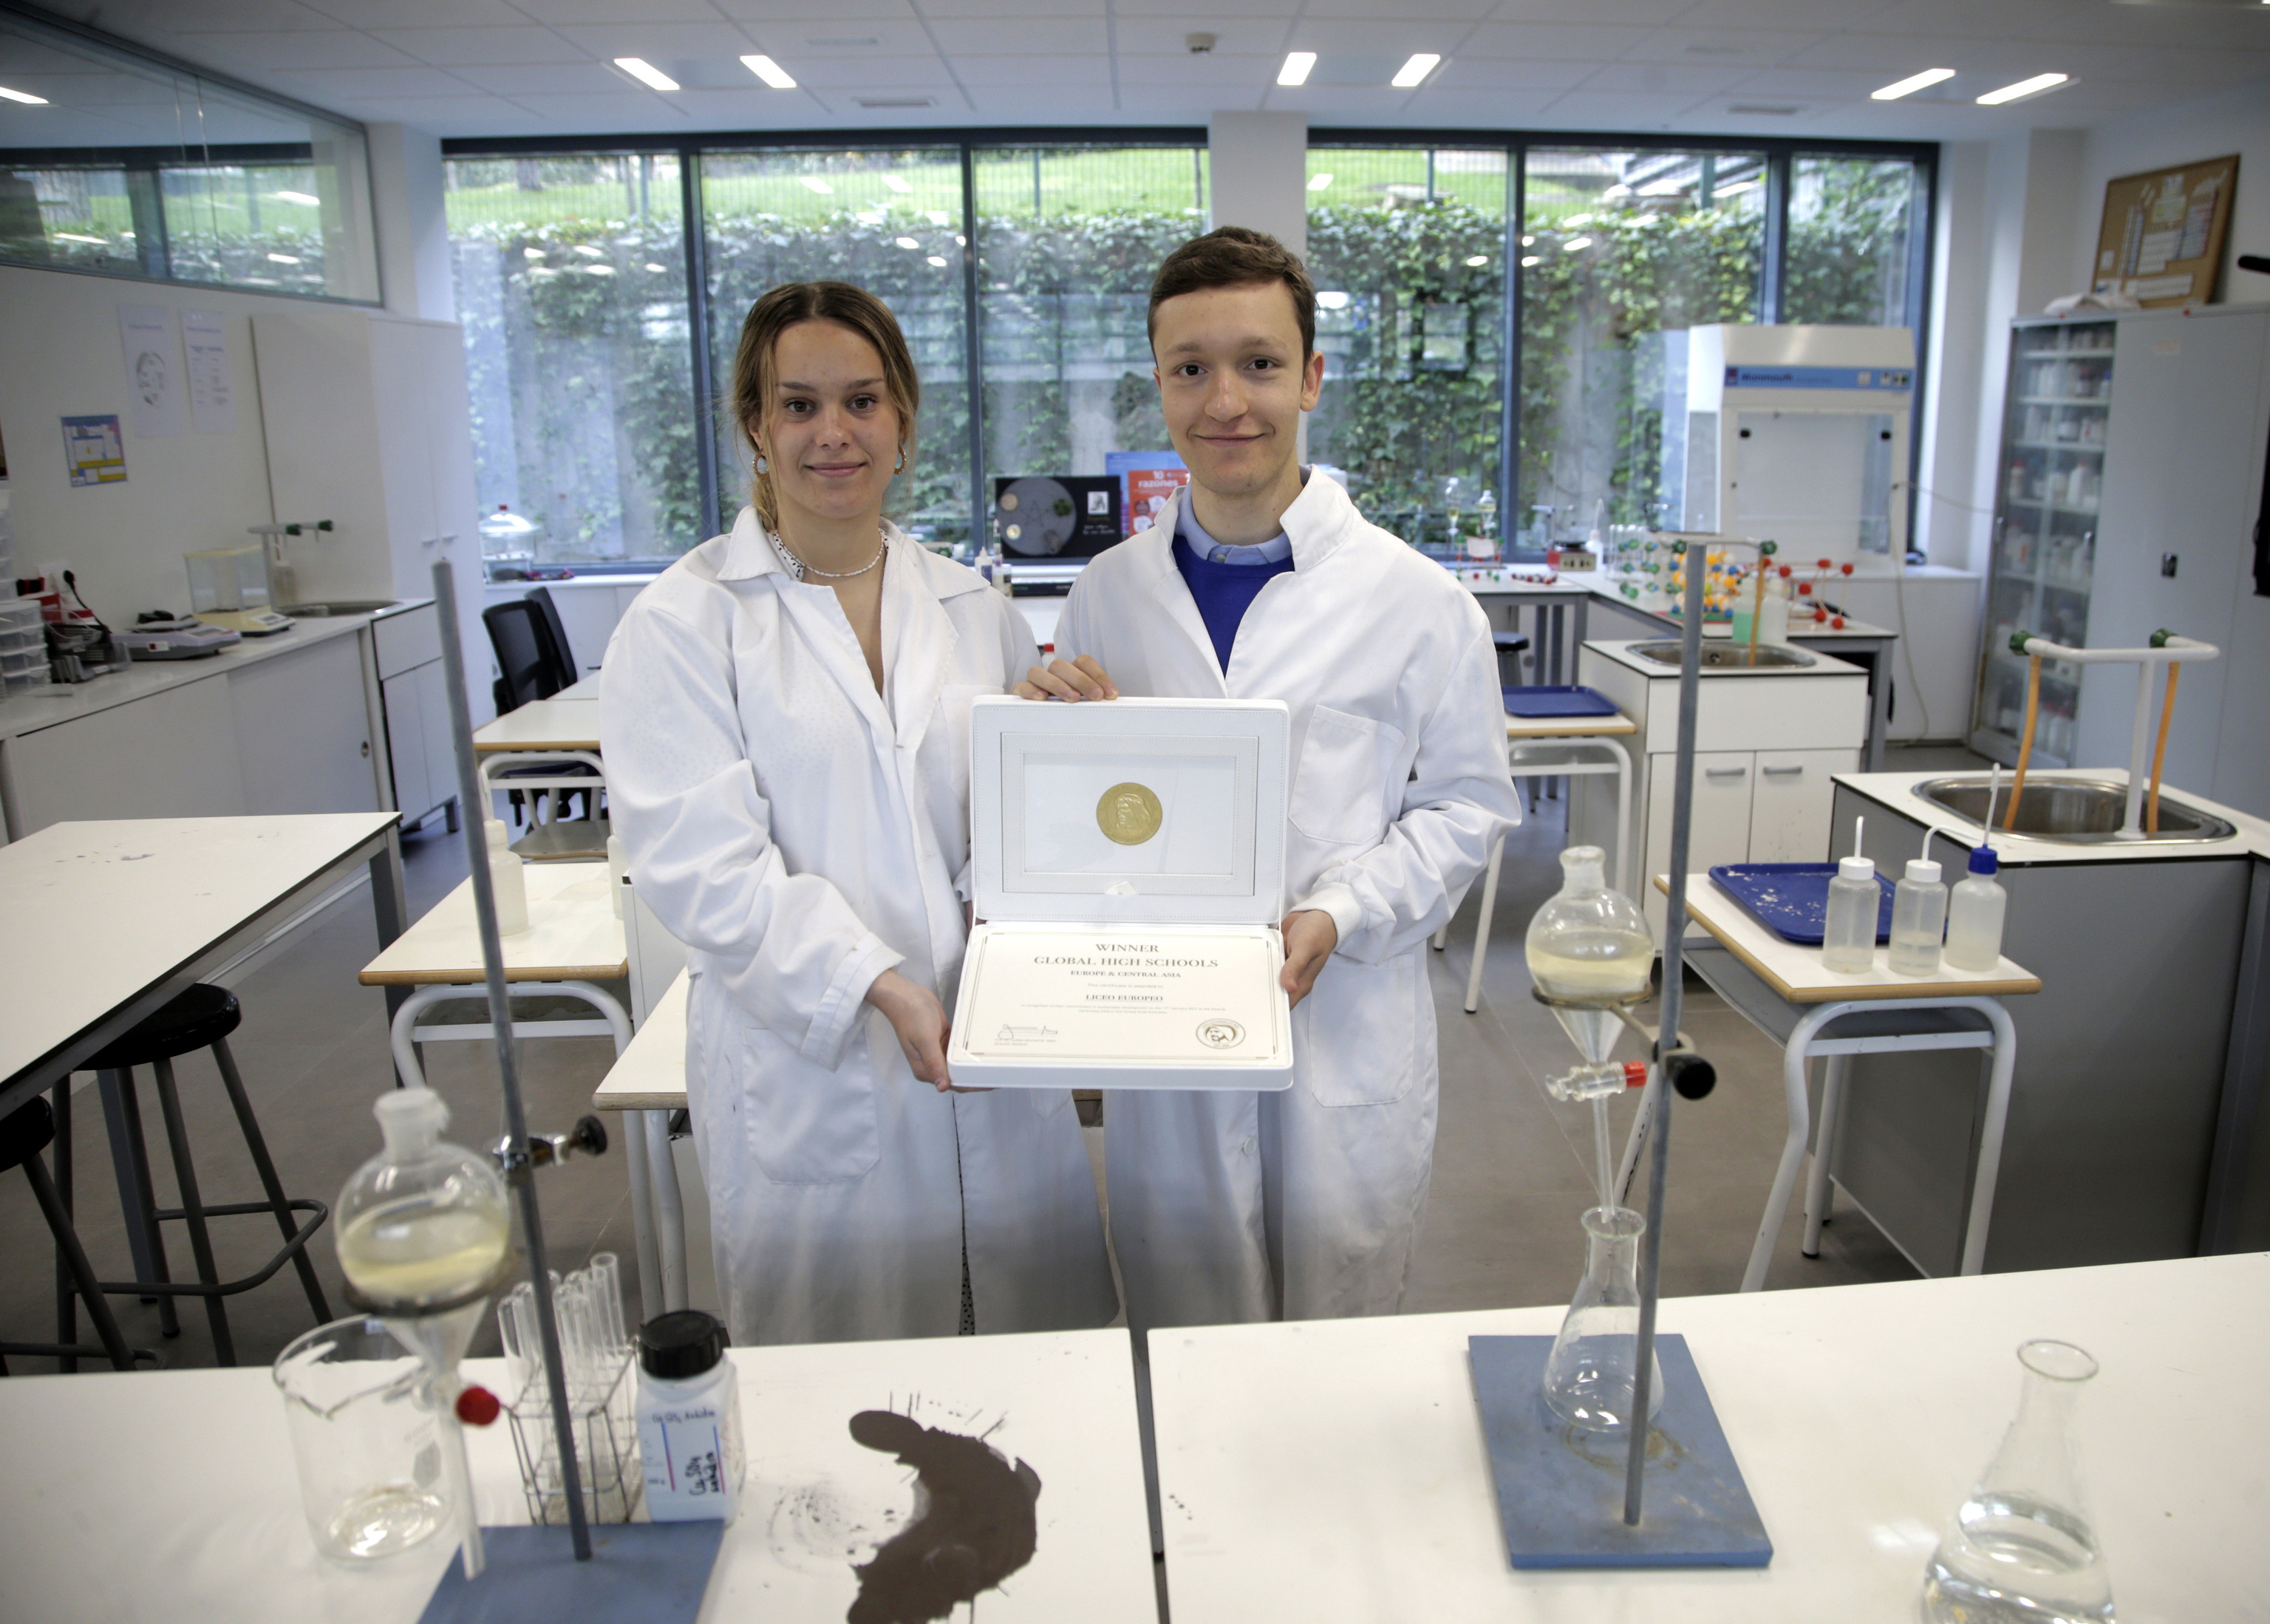 Los estudiantes Lucía Munnecke y Pablo Luengo, en el laboratorio del Liceo Europeo con el premio mundial de sostenibilidad recibido en Dubái.